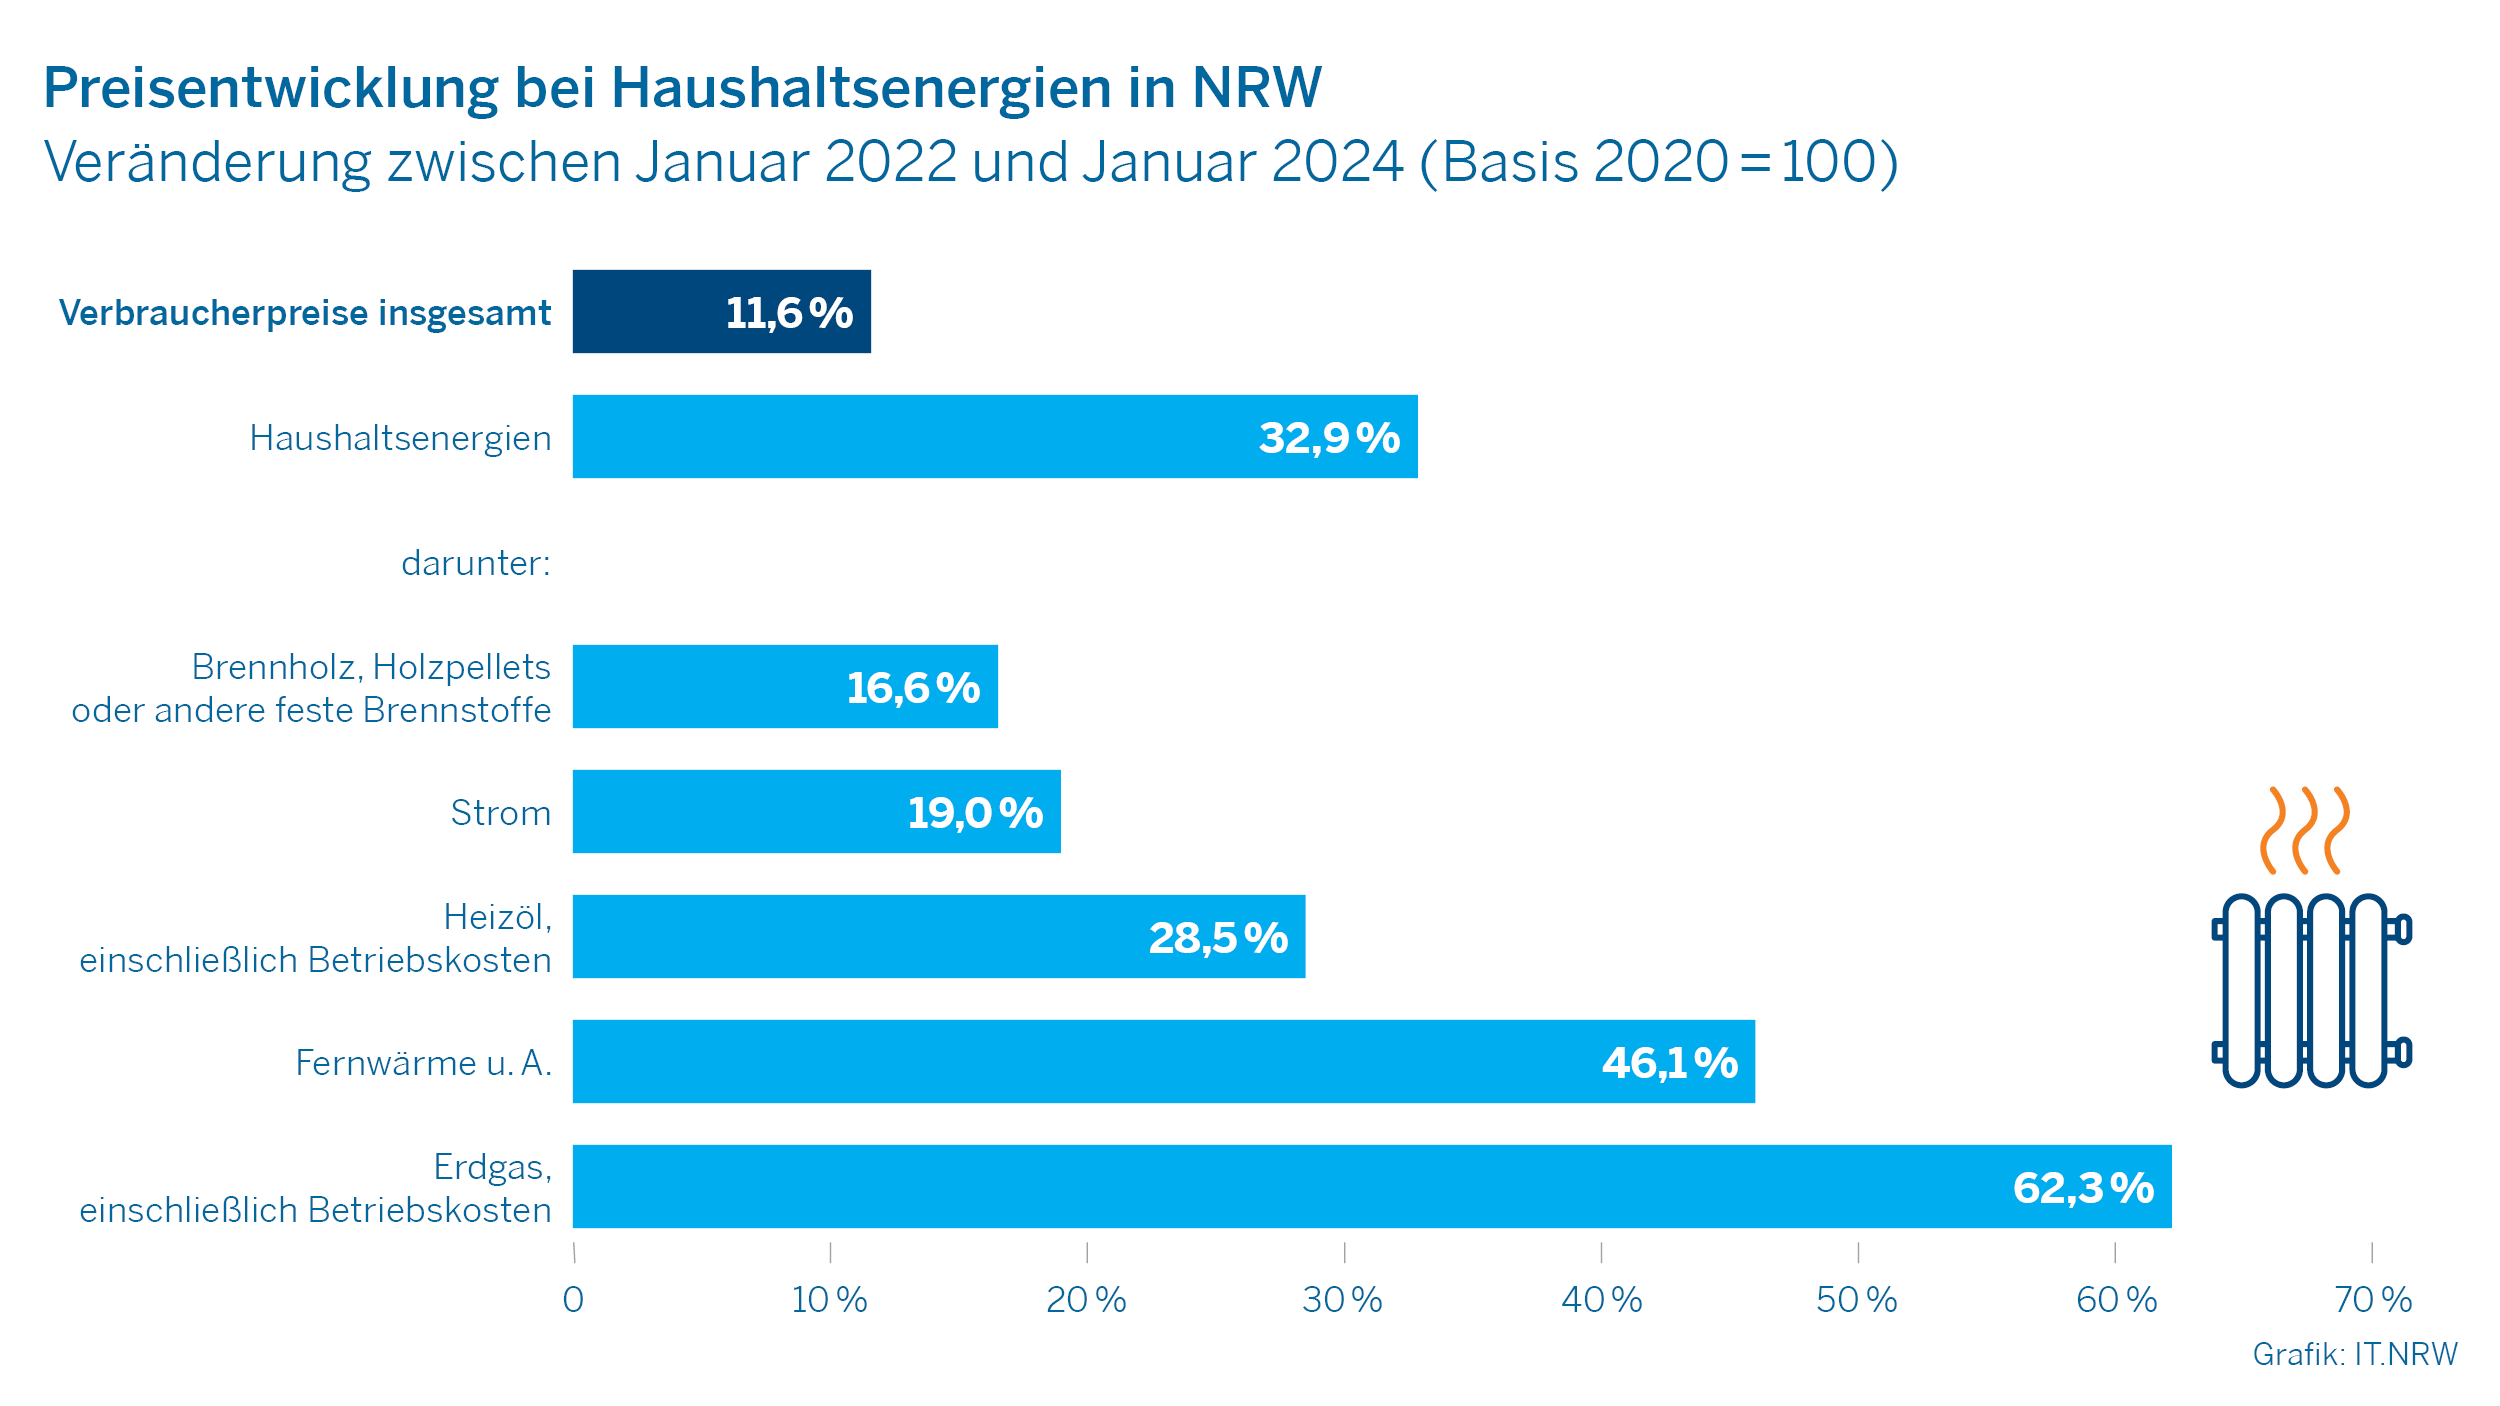 Preisentwicklung bei Haushaltsenergien in NRW